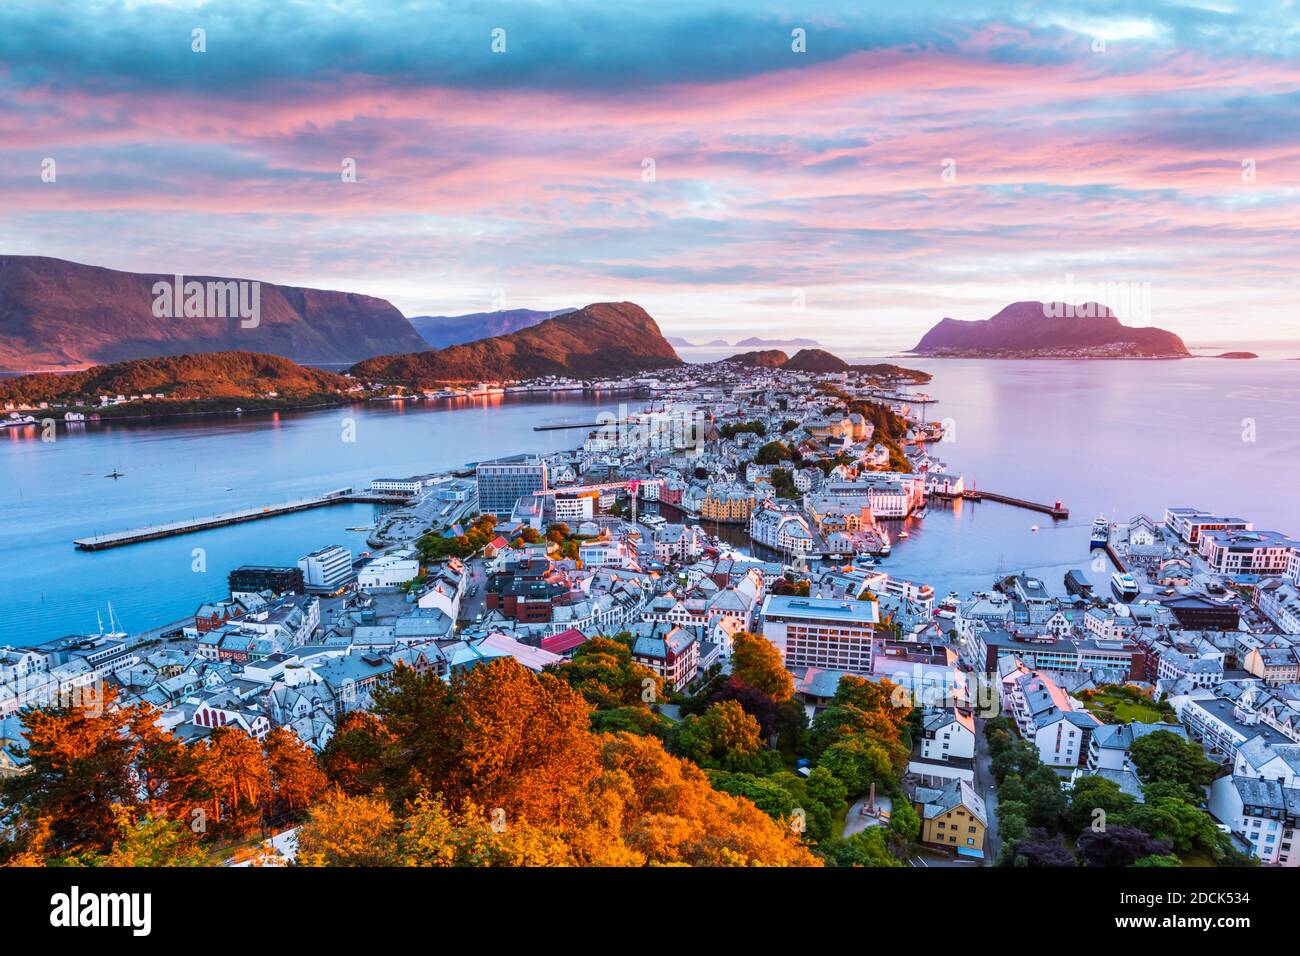 Coucher de soleil coloré dans la ville portuaire d'Alesund sur la côte ouest de la Norvège. Endroit où l'océan rencontre les montagnes. Photographie de paysage Banque D'Images